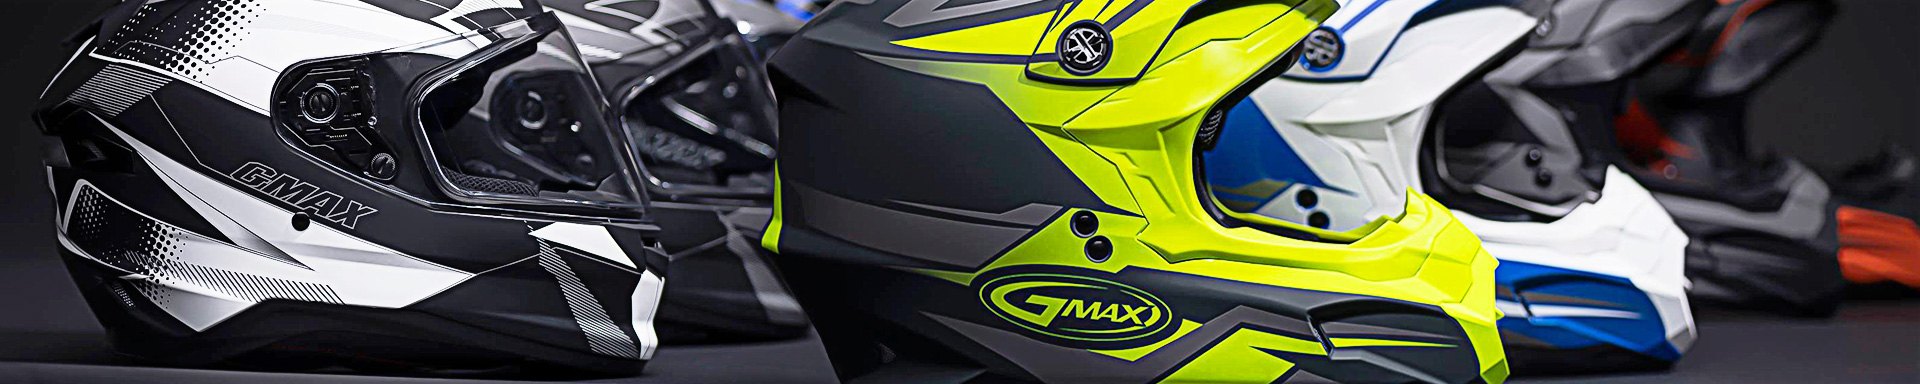 GMAX Dirt Bike Helmets